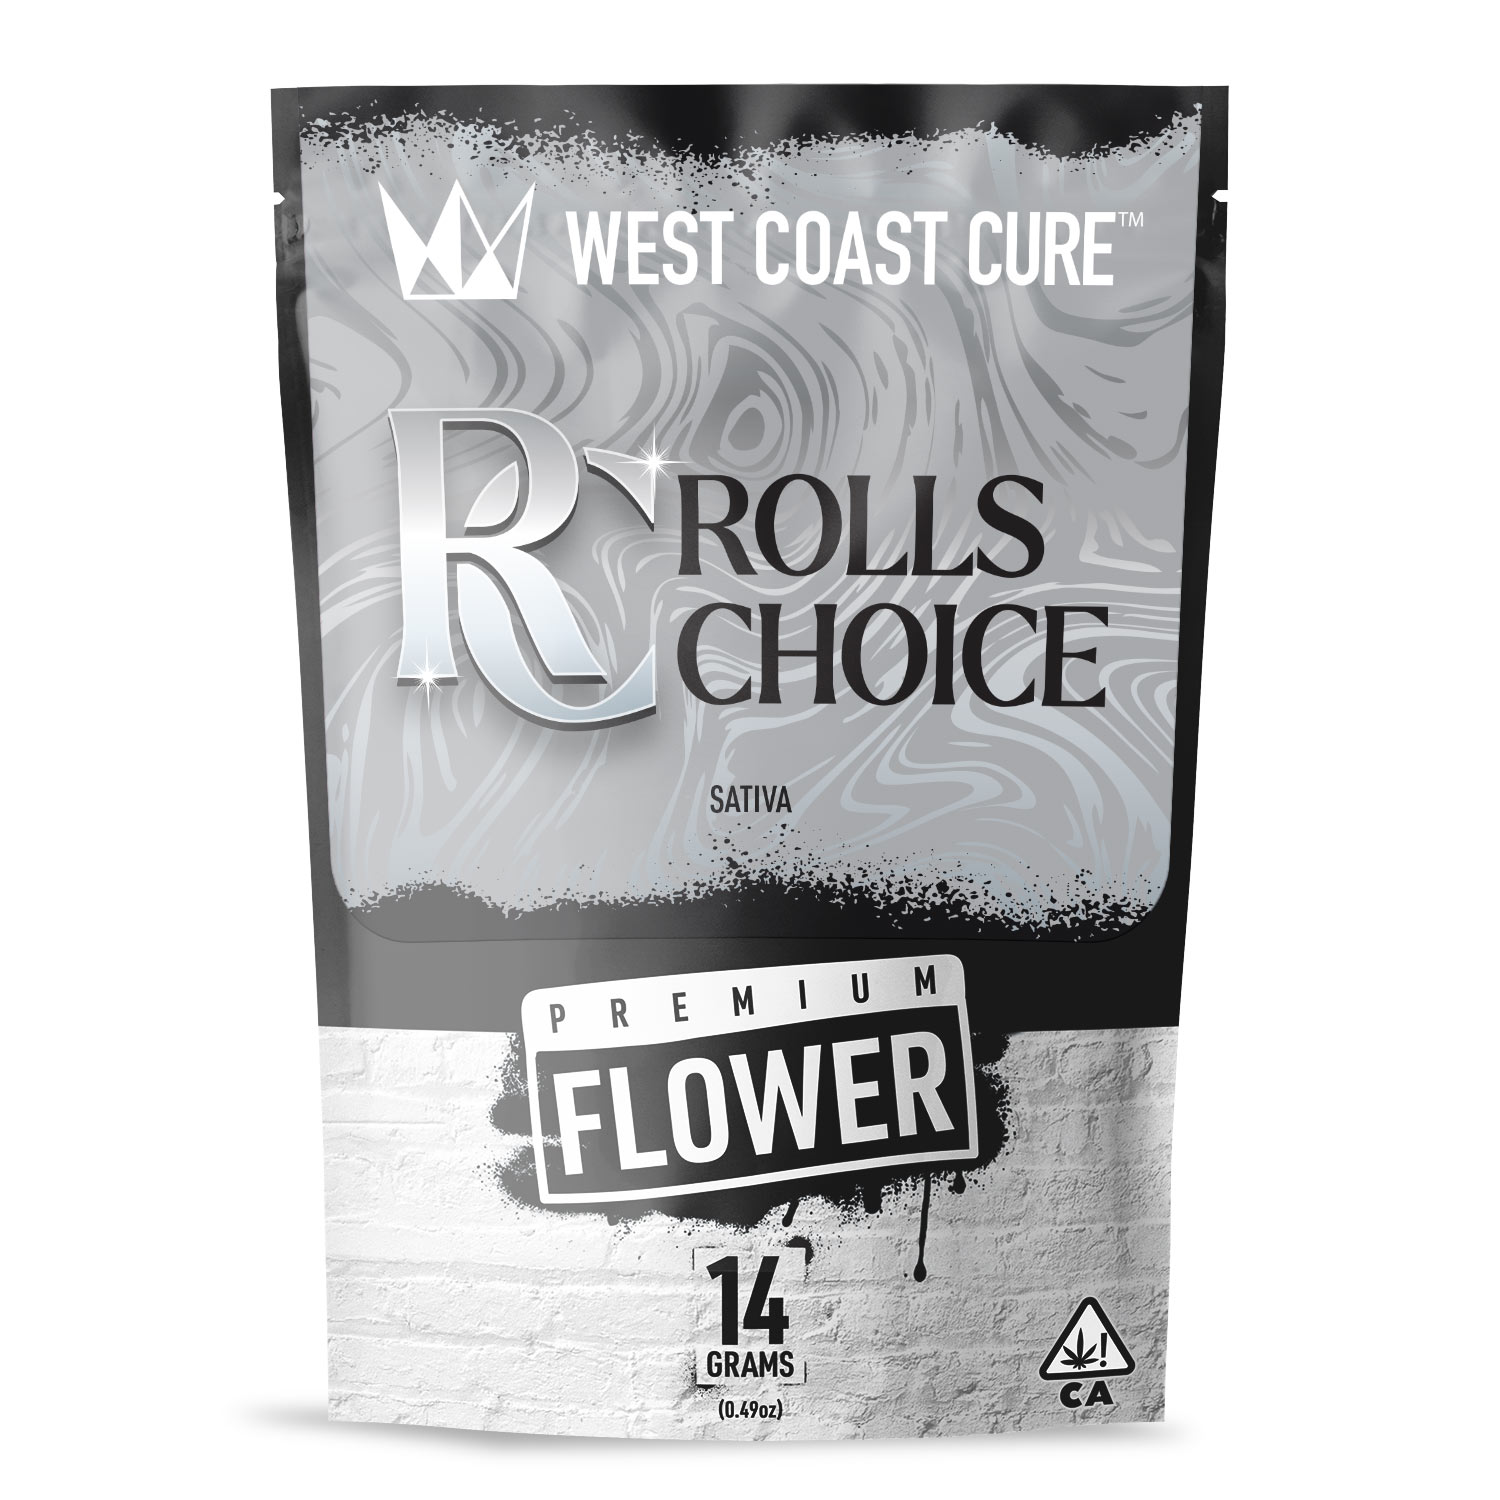 Rolls Choice premium flower